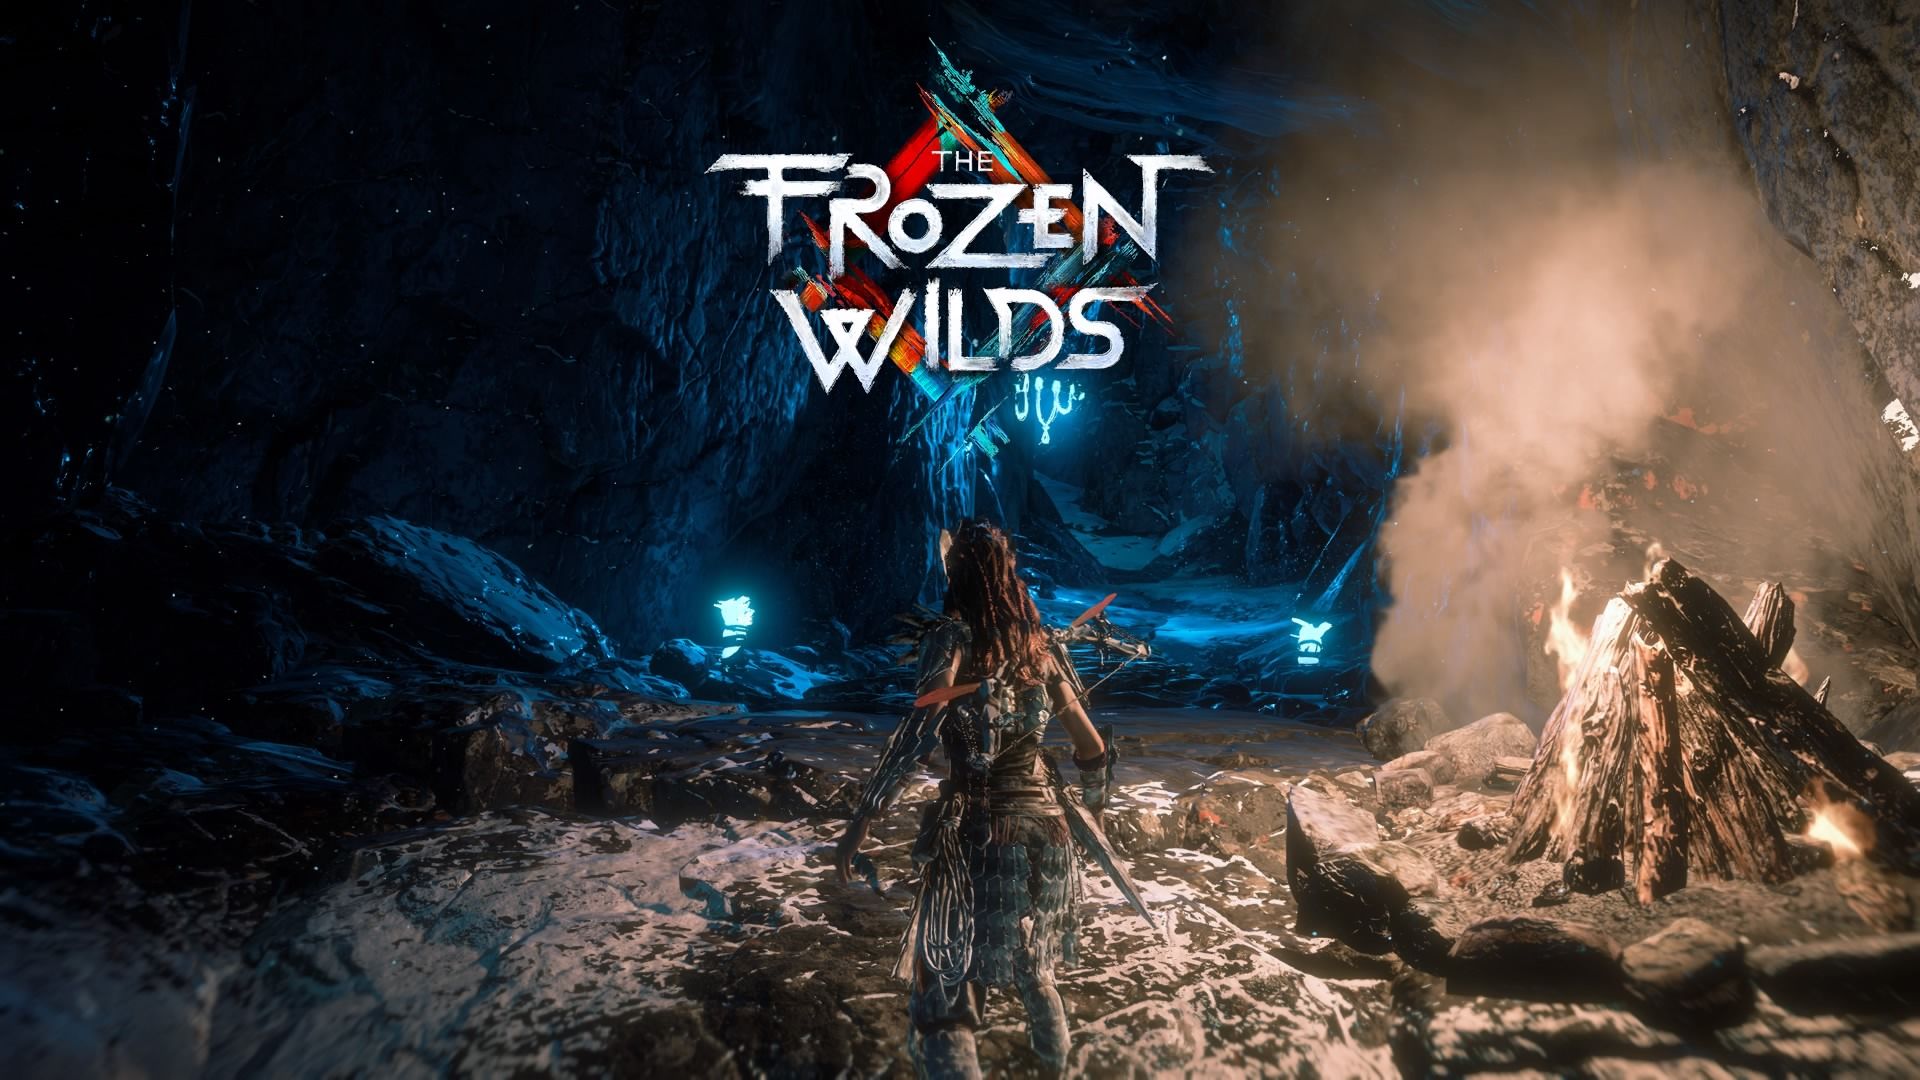 HORIZON ZERO DAWN The Frozen Wilds DLC - FINAL BOSS + ENDING 